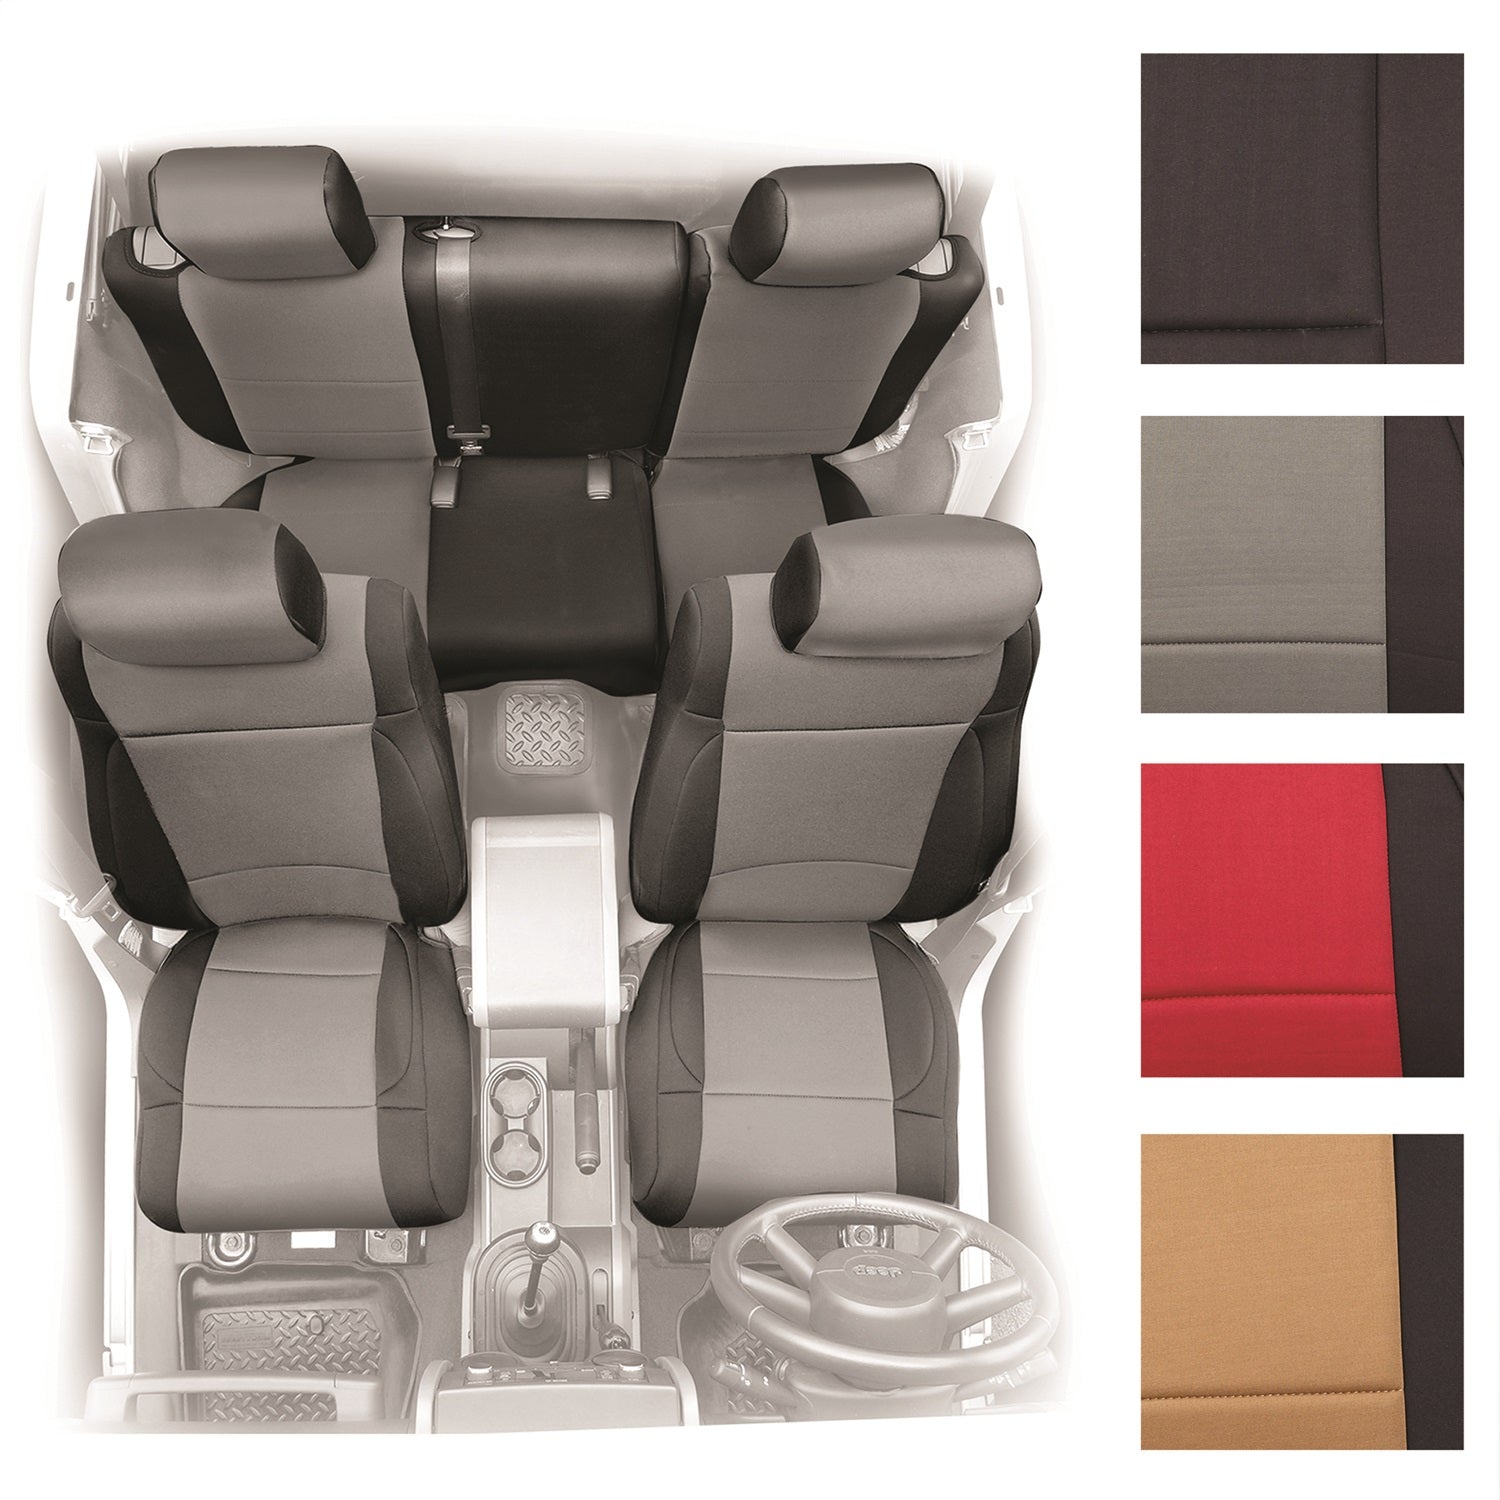 Smittybilt 471430 Neoprene Seat Cover Fits 07-12 Wrangler (JK)